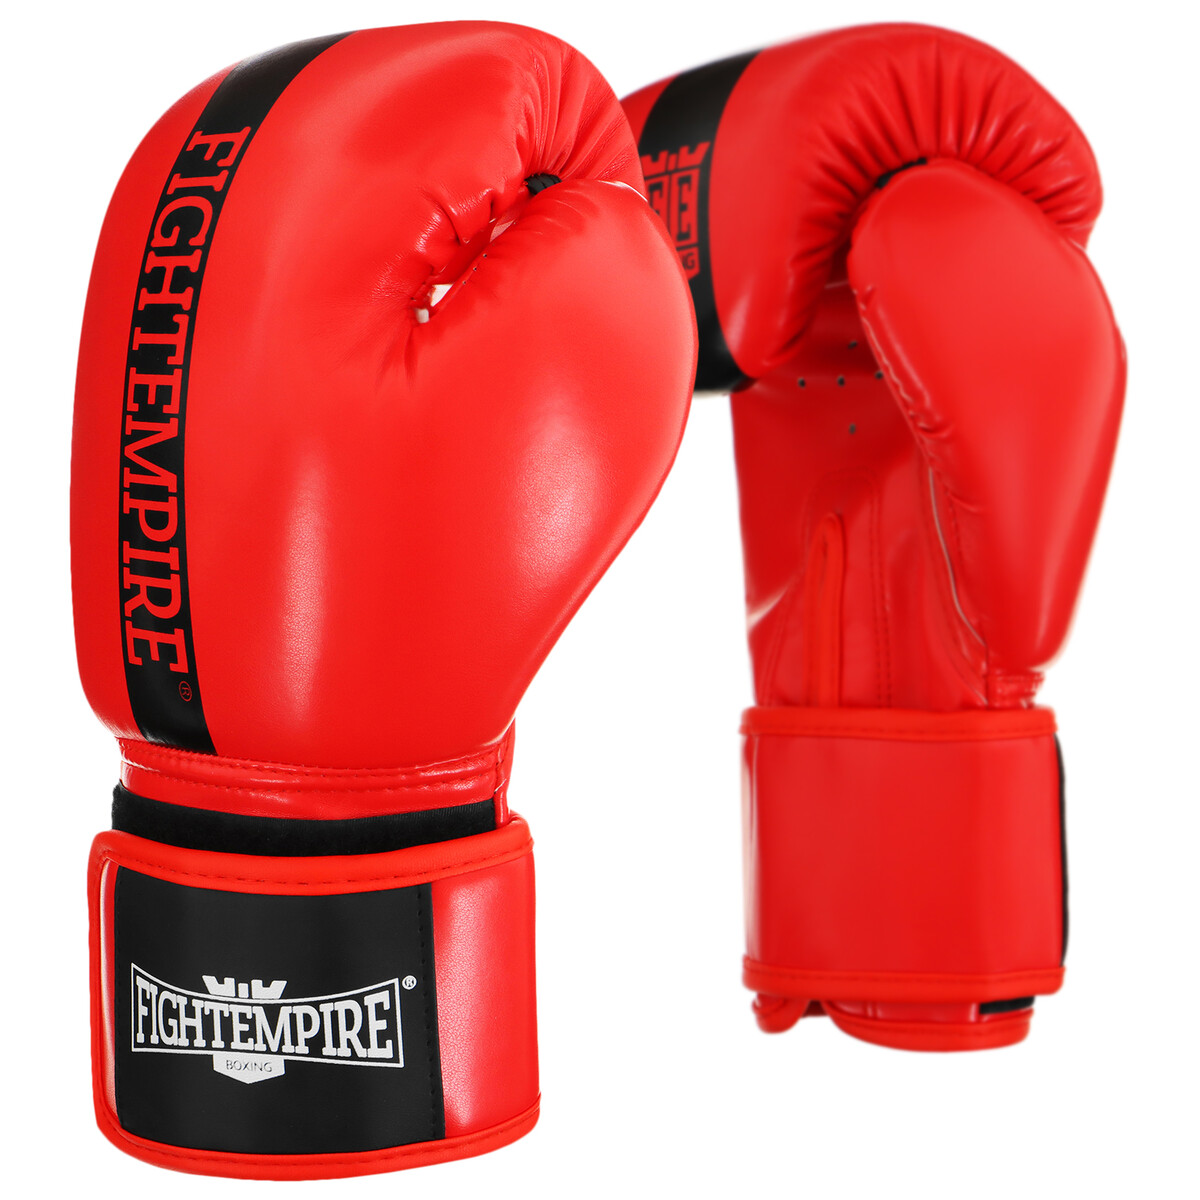 Перчатки боксерские fight empire, 10 унций, цвет красный боксерские перчатки everlast 1910 classic 16oz красный p00001708